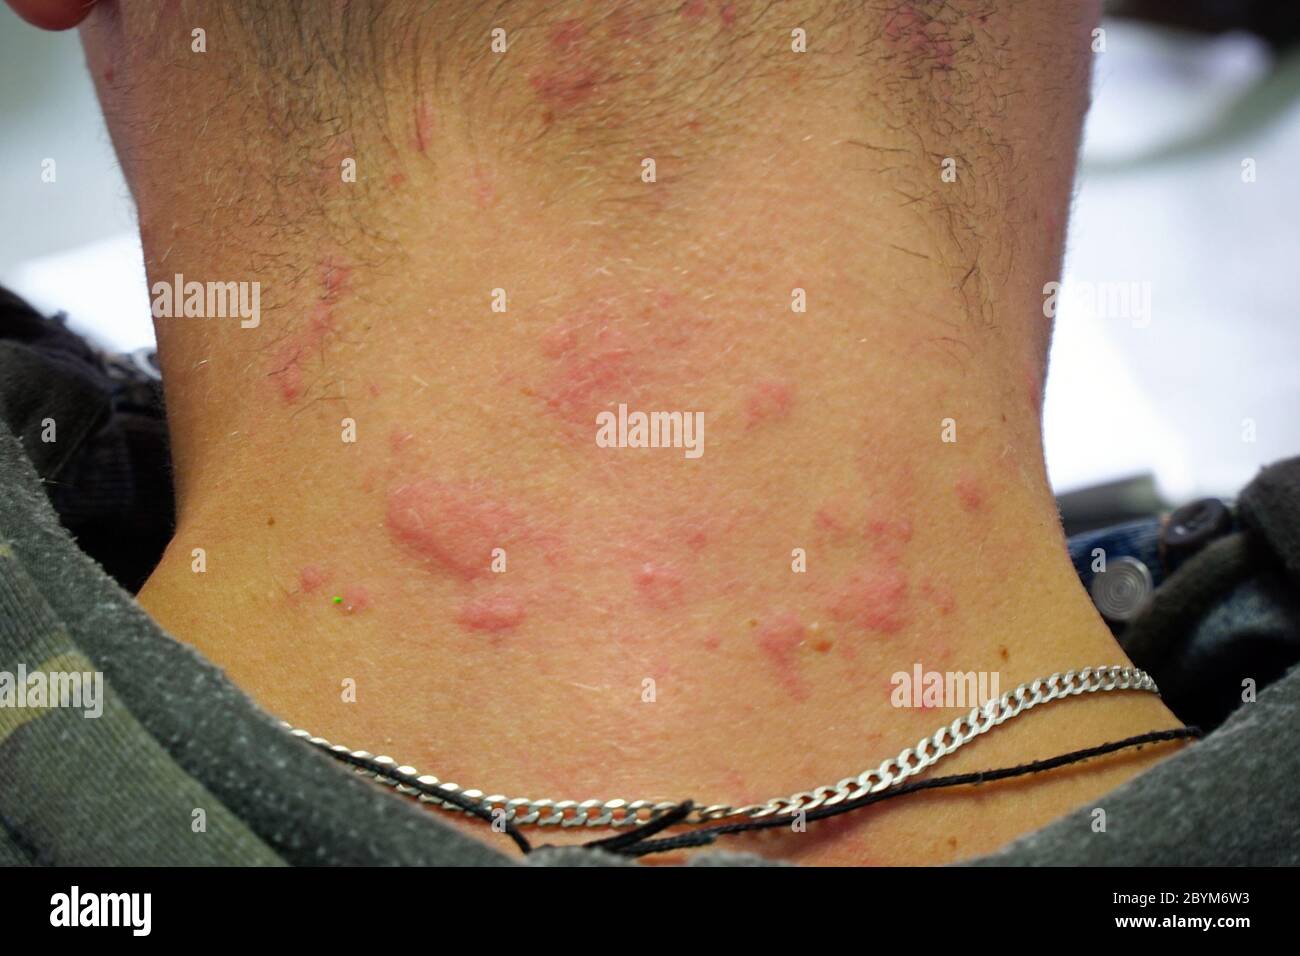 Éruption cutanée rouge sur le cou. Réaction allergique sur la peau ...